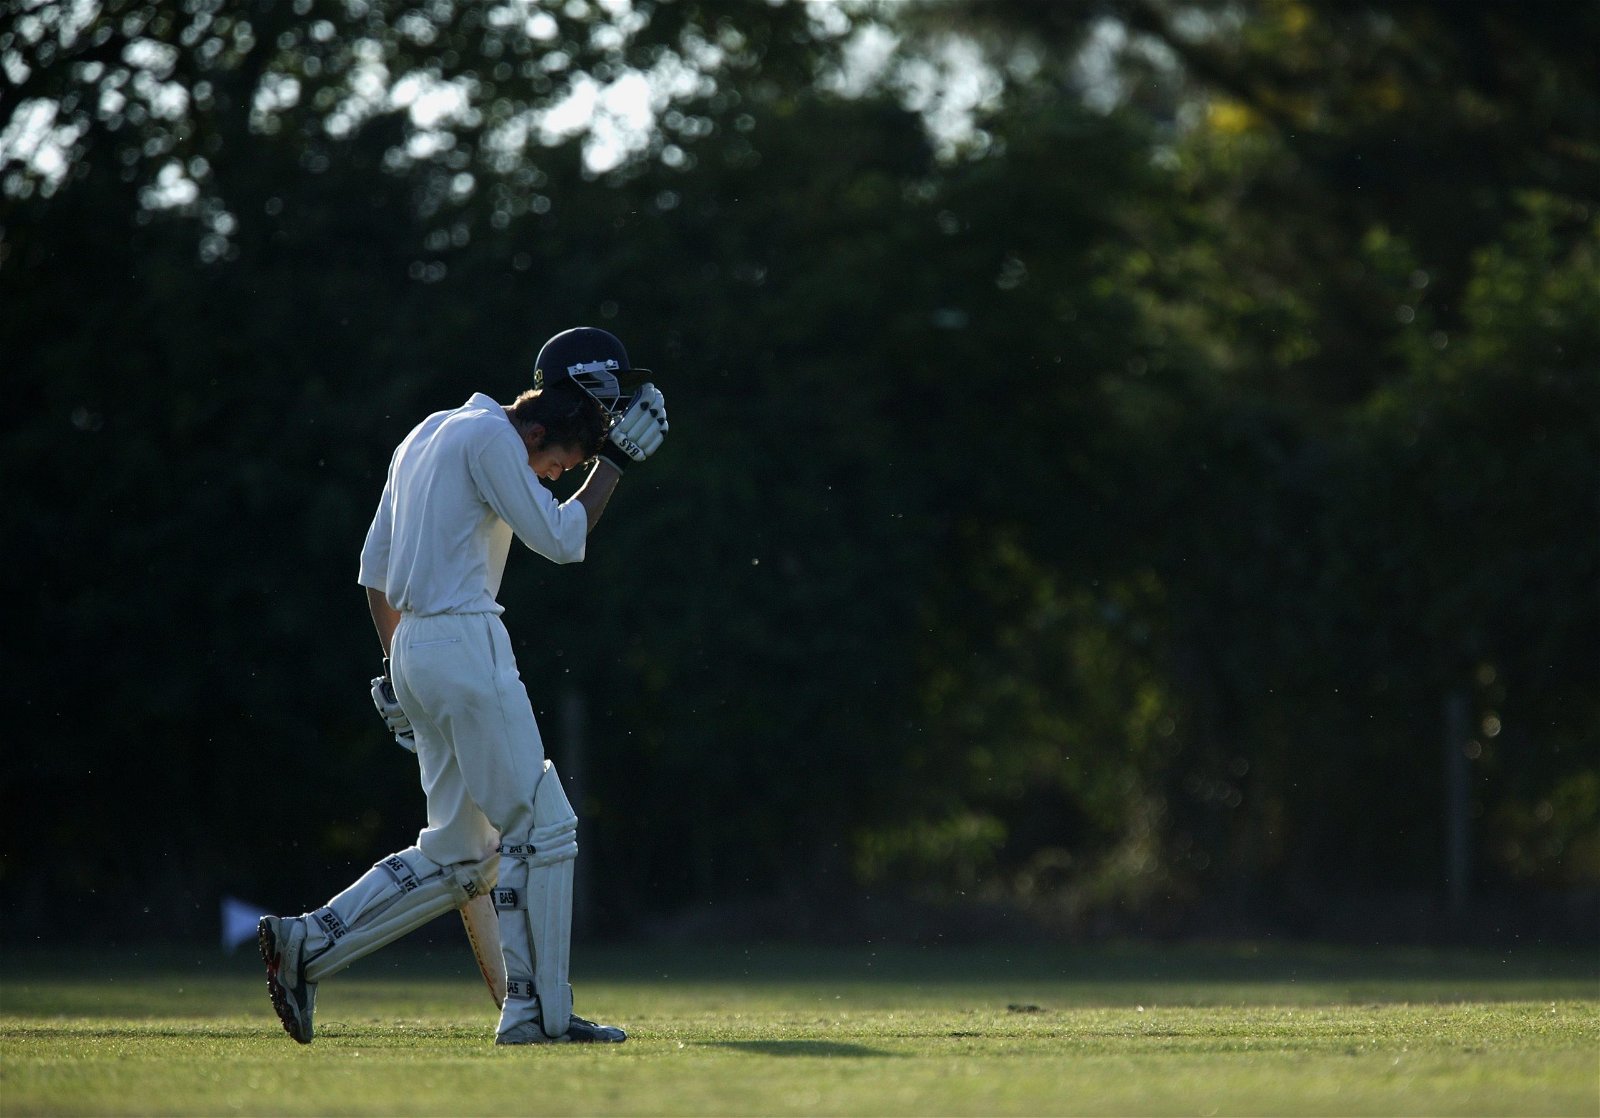 Club debate letters: Readers' views on club cricket’s teenage drop-off